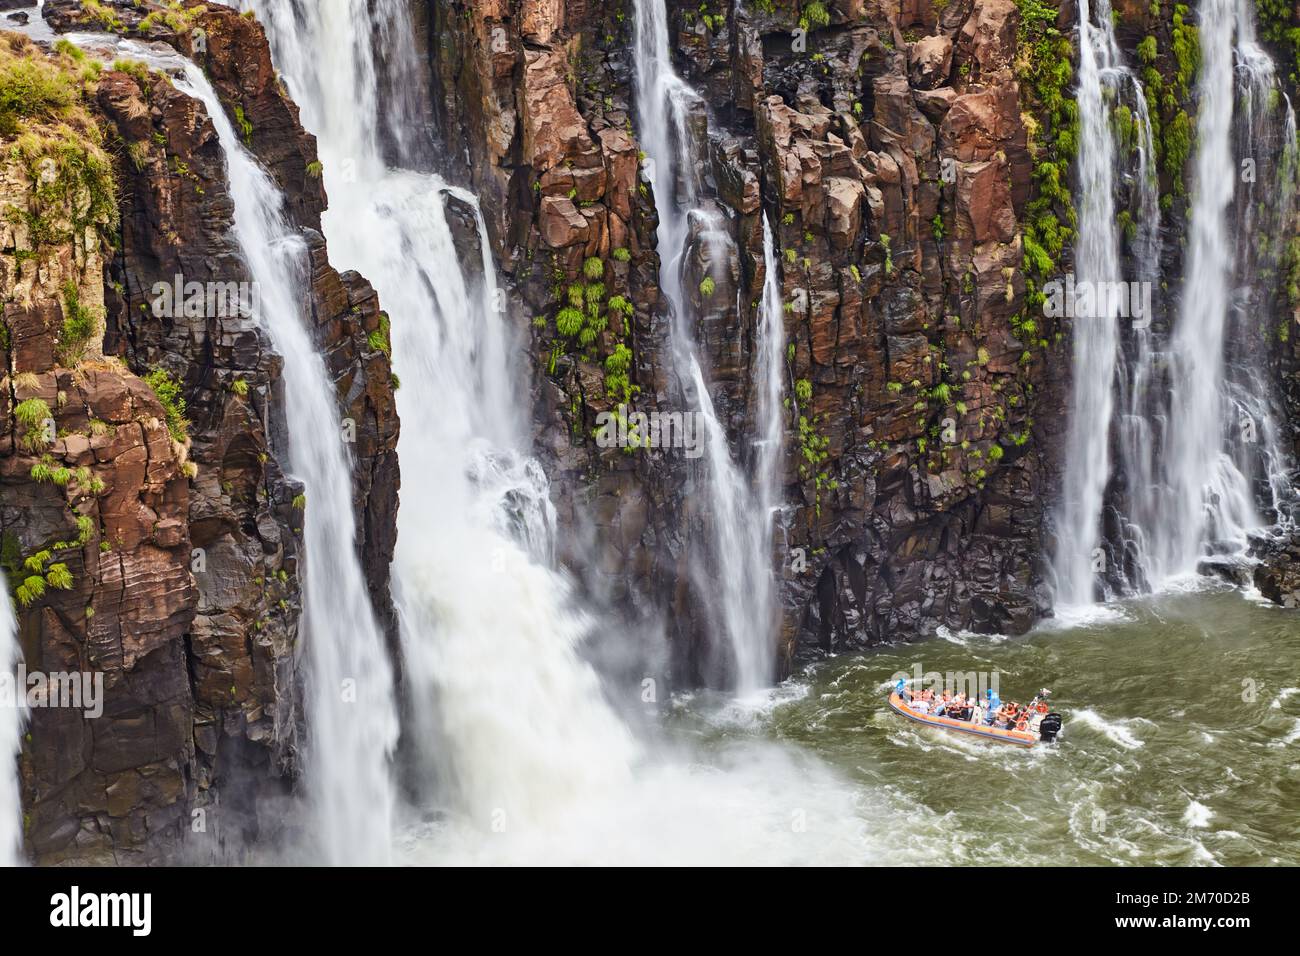 Activité touristique d'aventure populaire aux chutes d'Iguazu, approches hors-bord du cours d'eau, vue du côté brésilien Banque D'Images